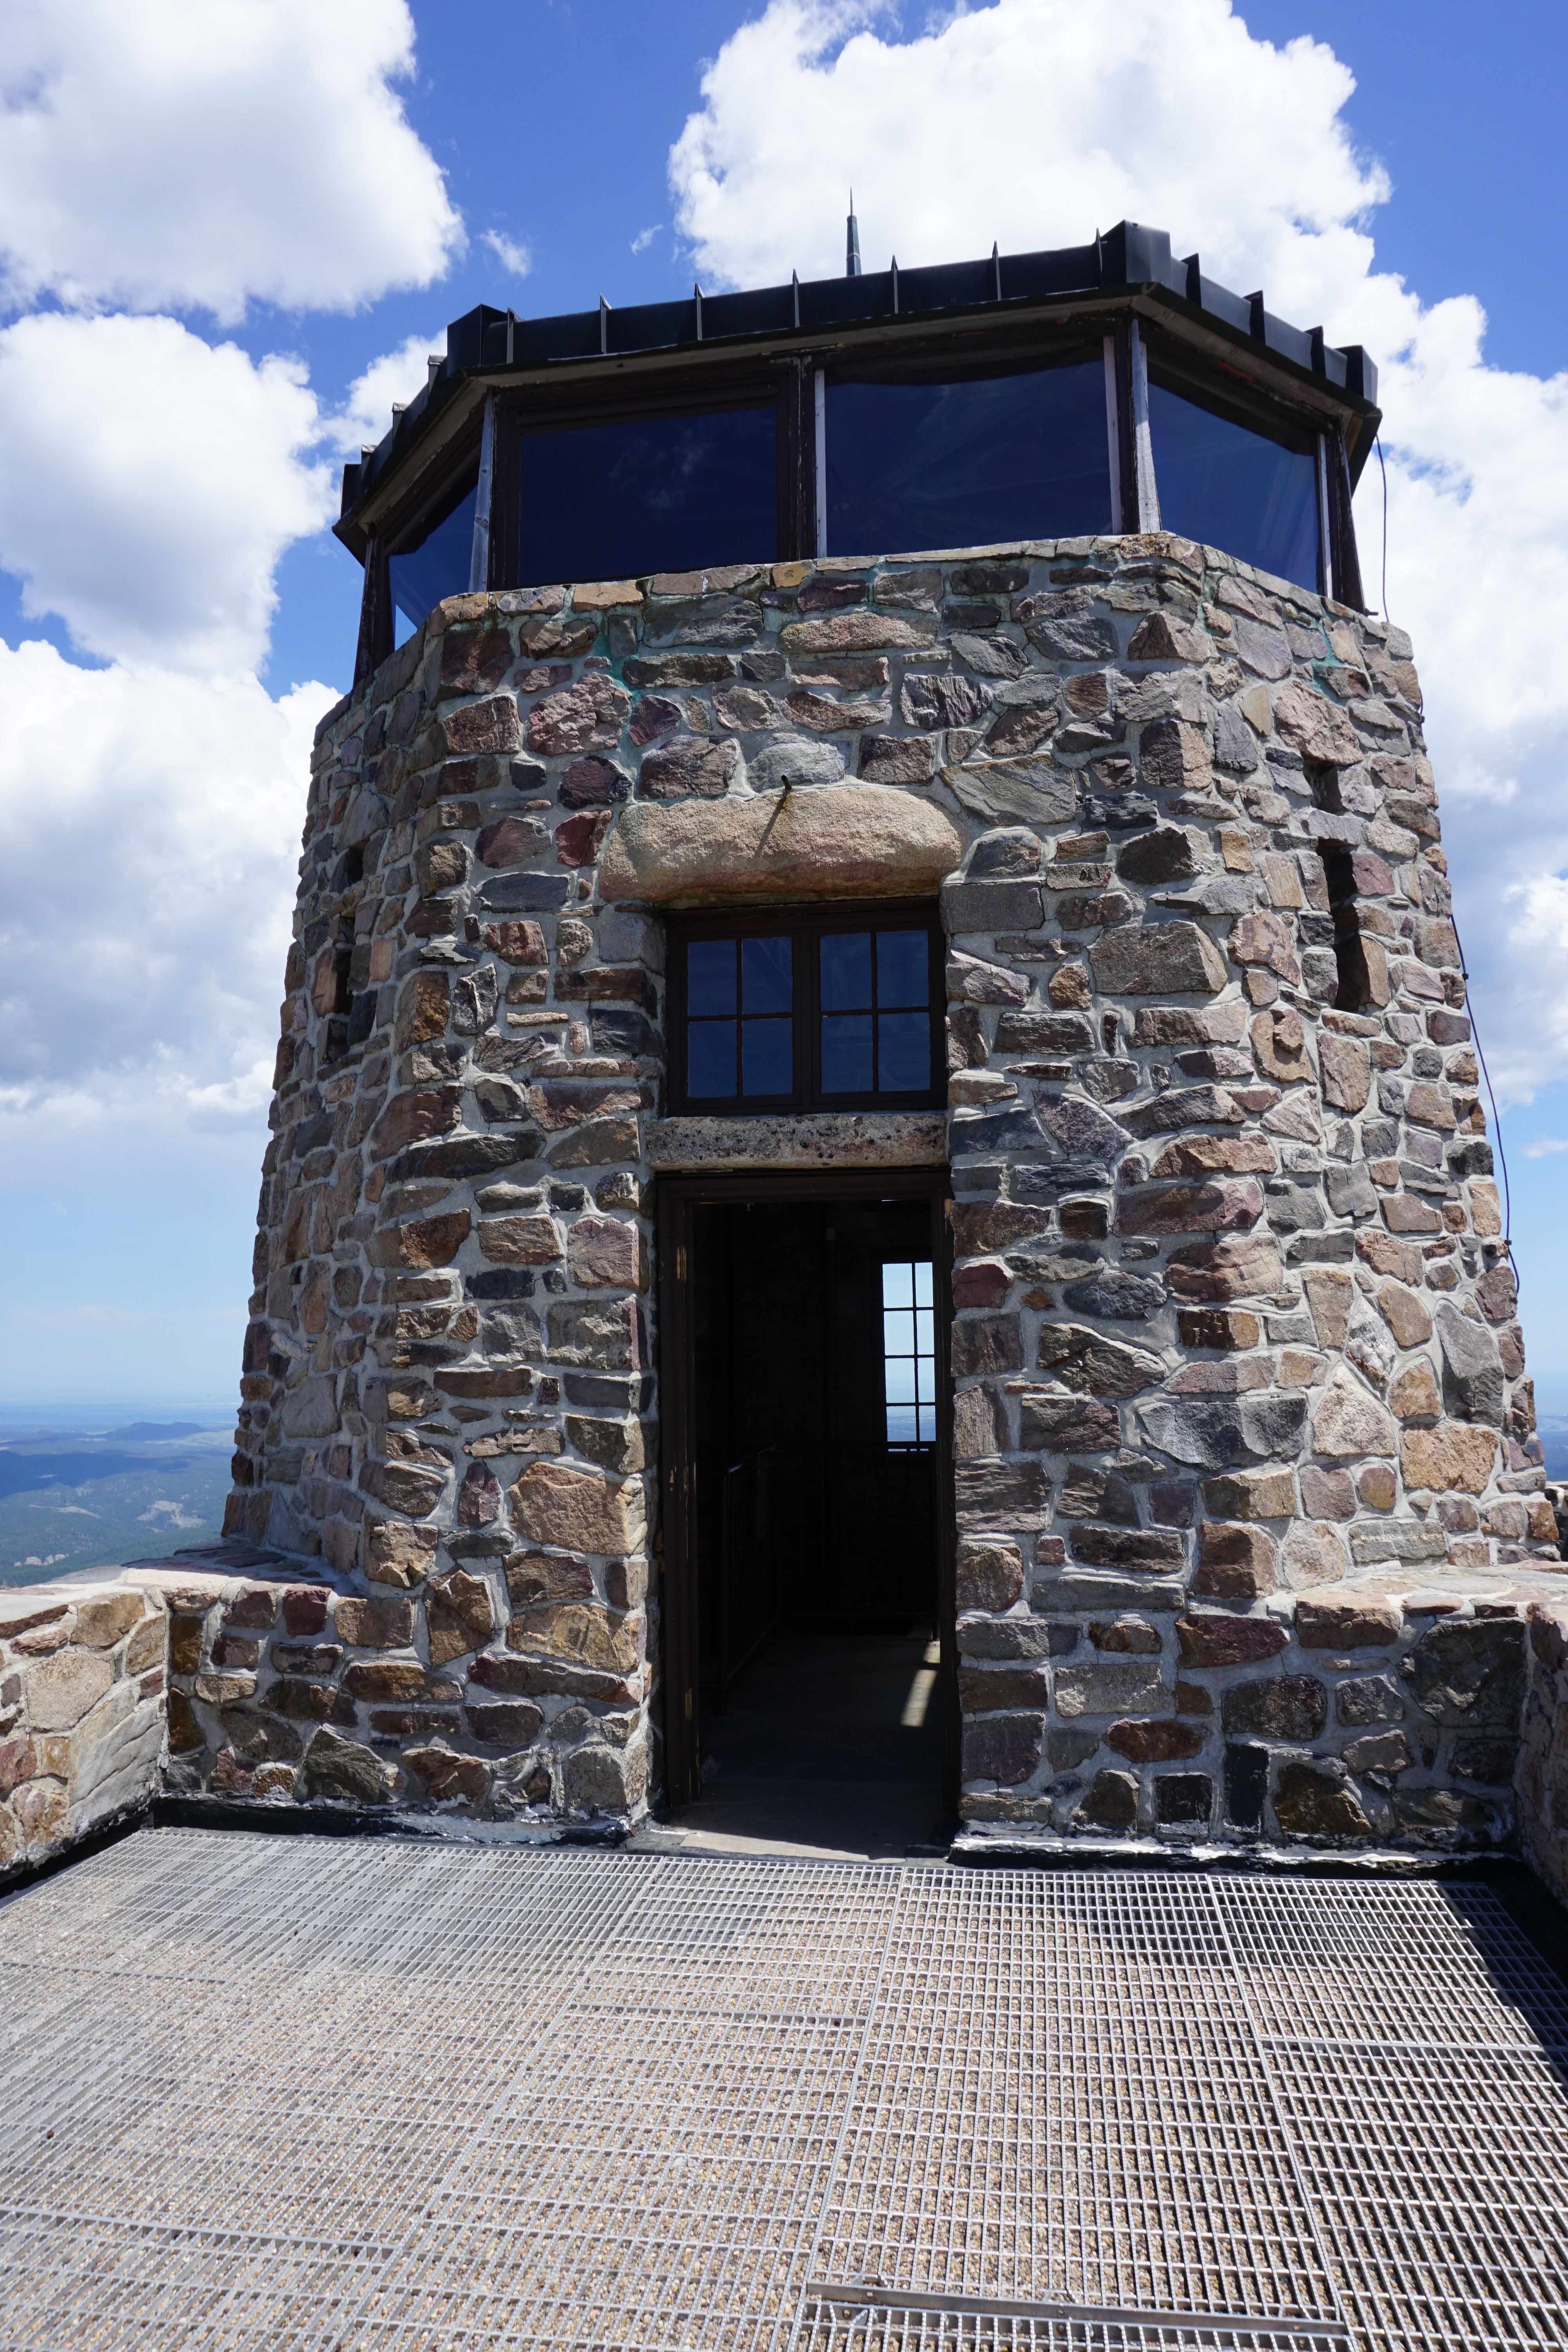 Harney Peak Lookout